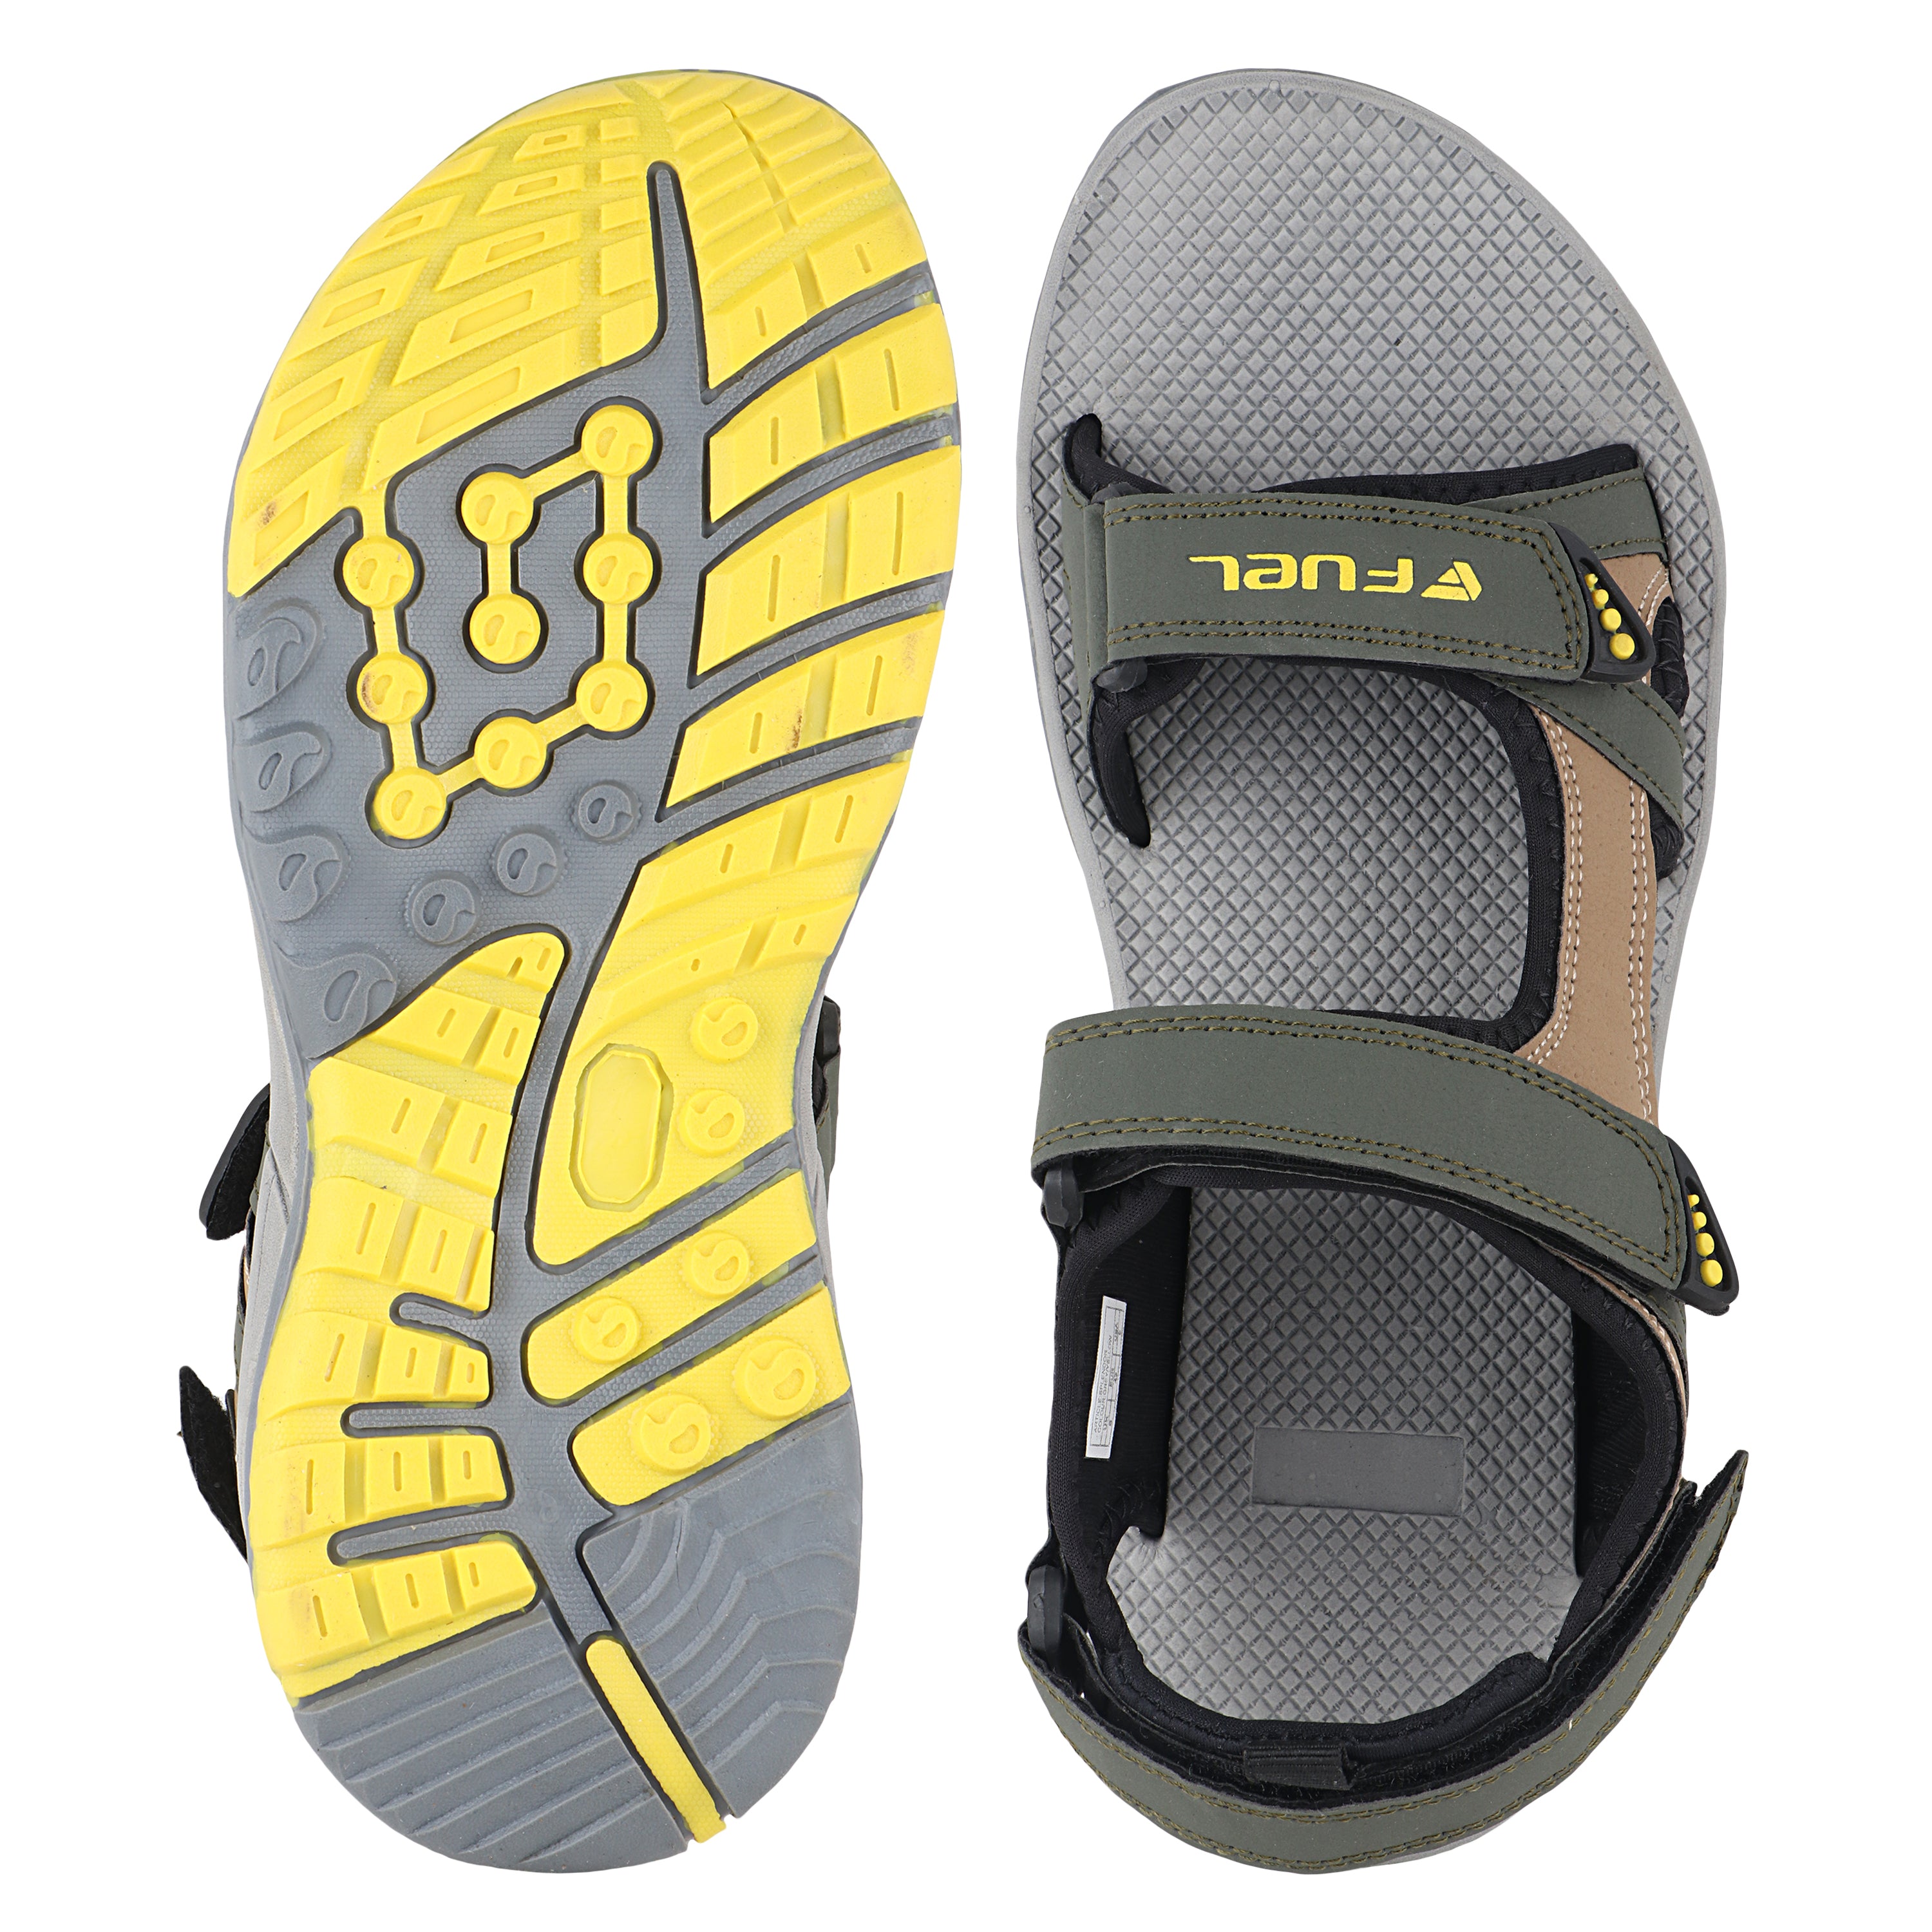 Fuel Splendor Sandals For Men's (Oilve-Yellow)